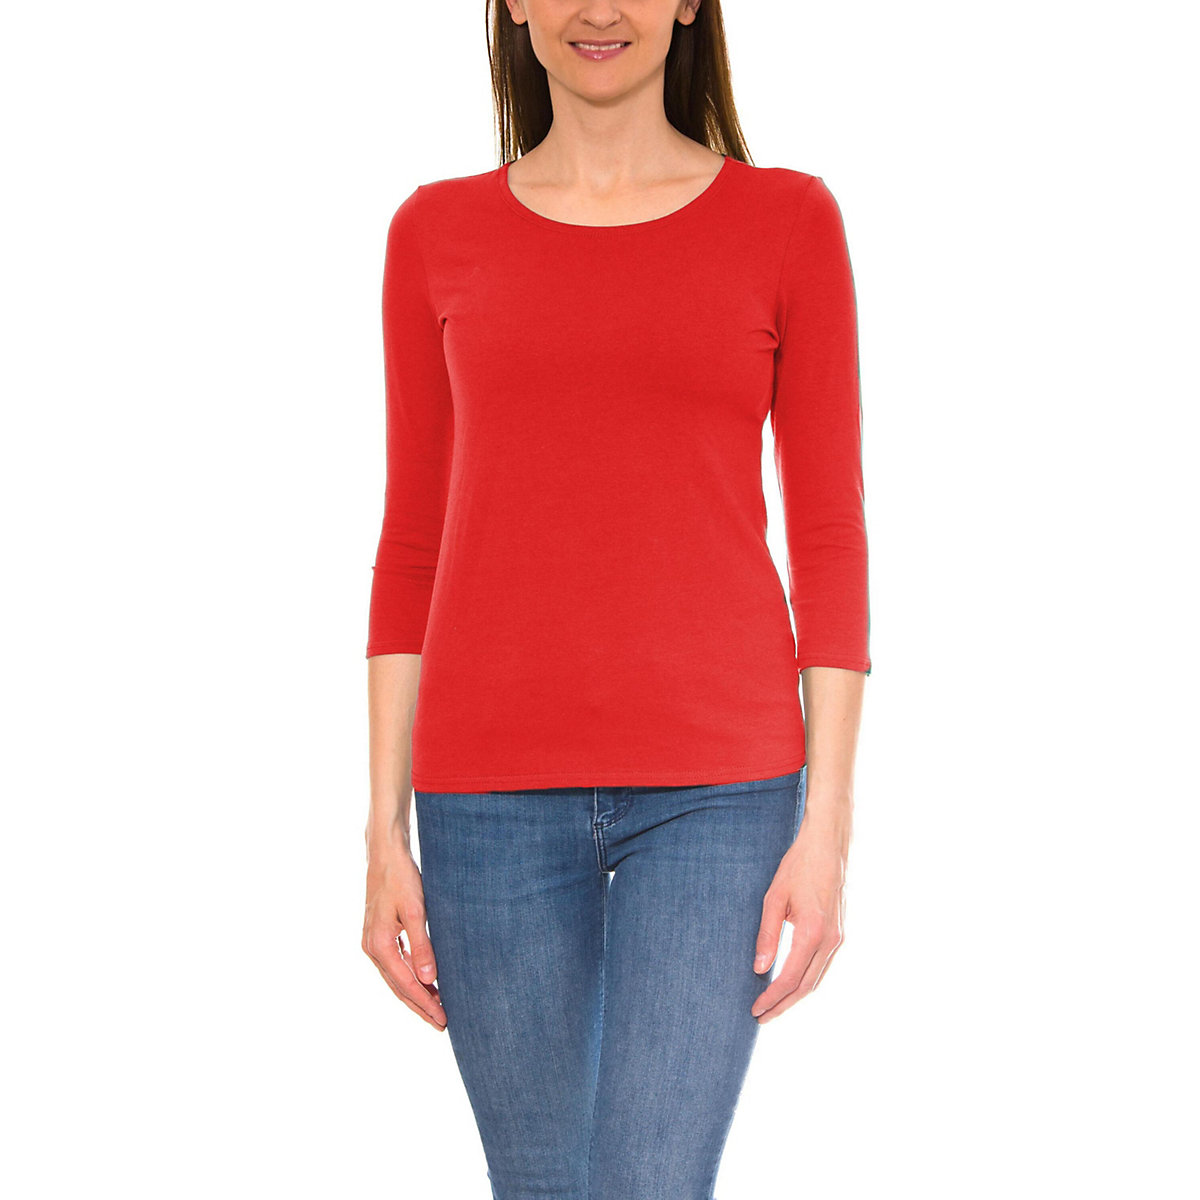 Alkato Damen Shirt 3/4 Arm mit Rundhals rot Modell 1